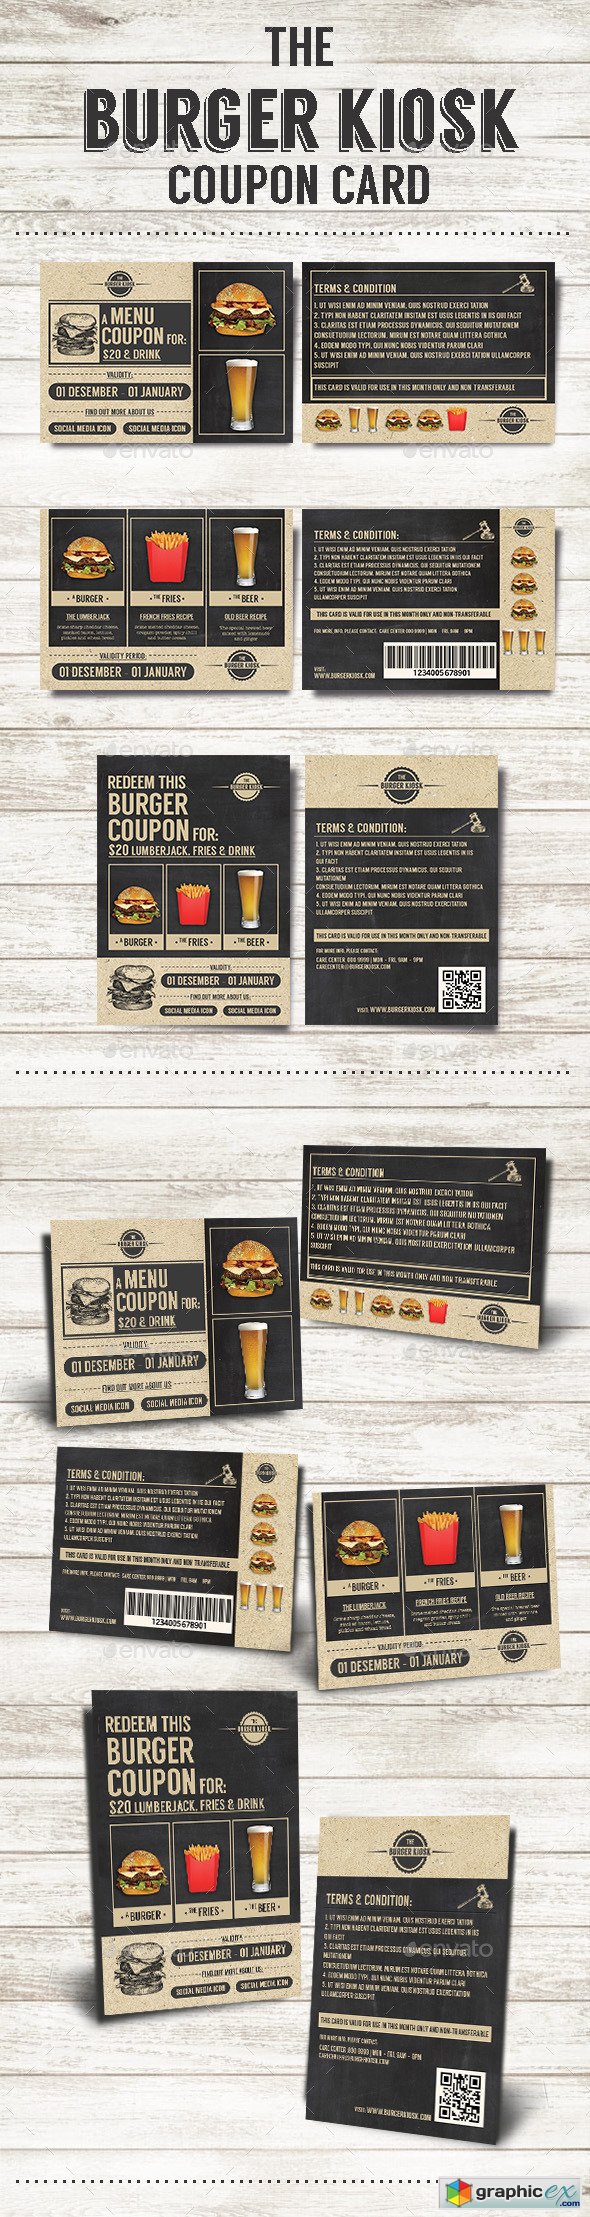 The Burger Kiosk Coupon Card